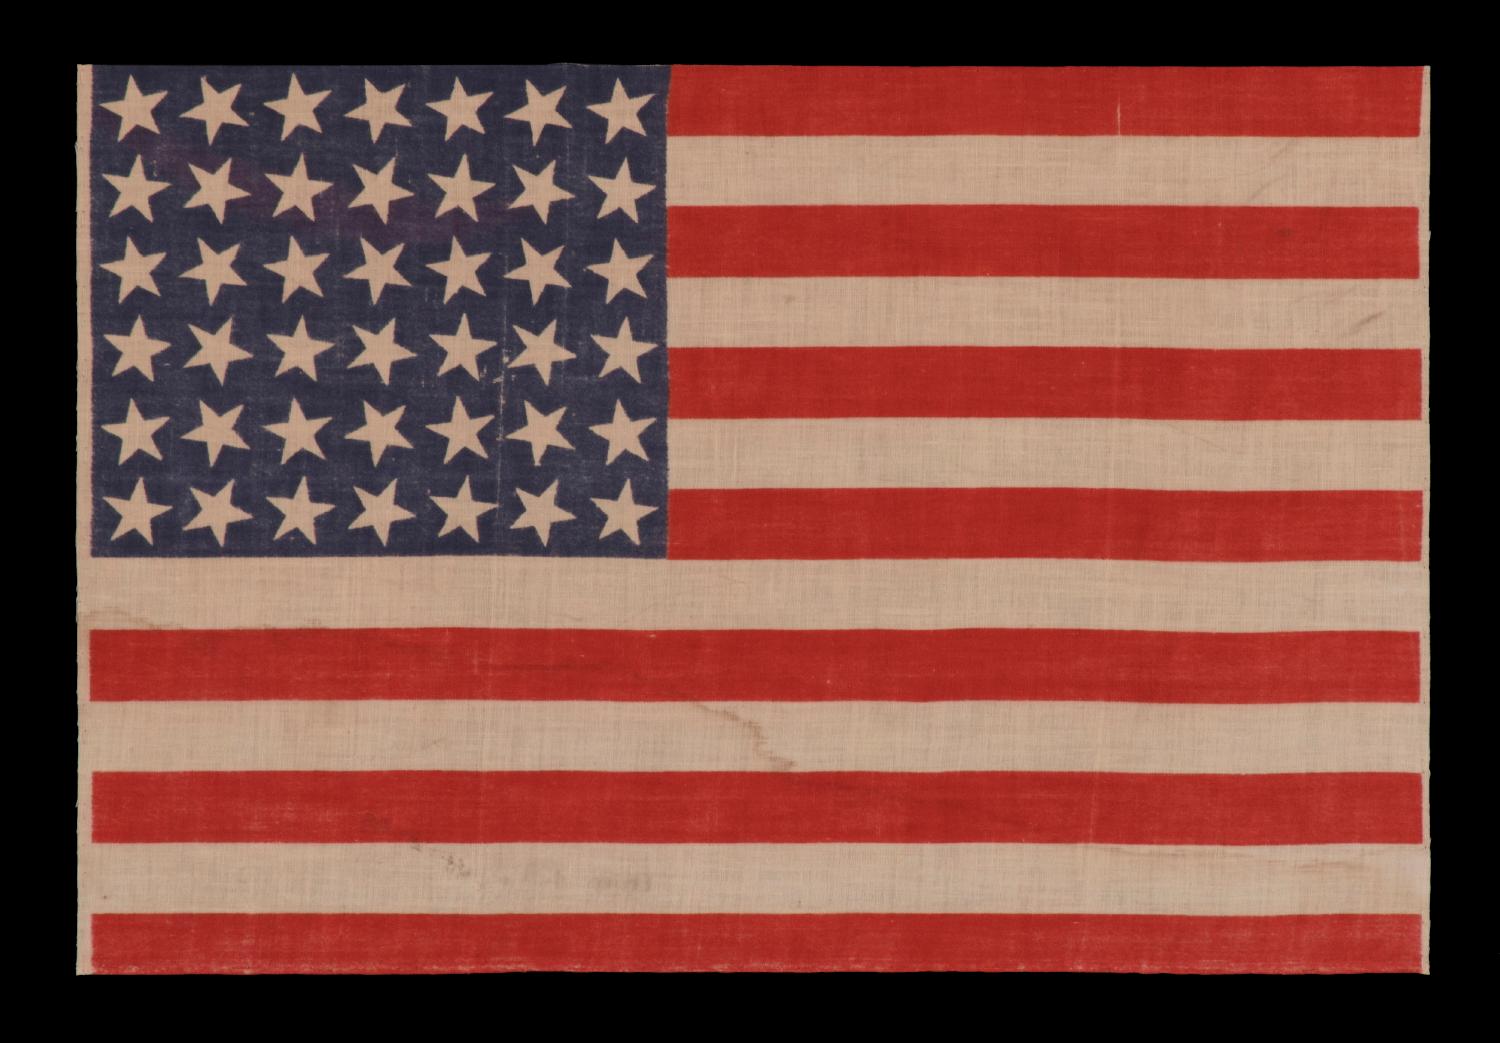 42 Sterne:: eine inoffizielle Anzahl von Sternen:: auf einer antiken amerikanischen Flagge mit verstreuter Sternanordnung:: 1889-1890:: Washington Statehood

42 Sterne Paradeflagge:: gedruckt auf Baumwollmusselin. Die Sterne sind geradlinig